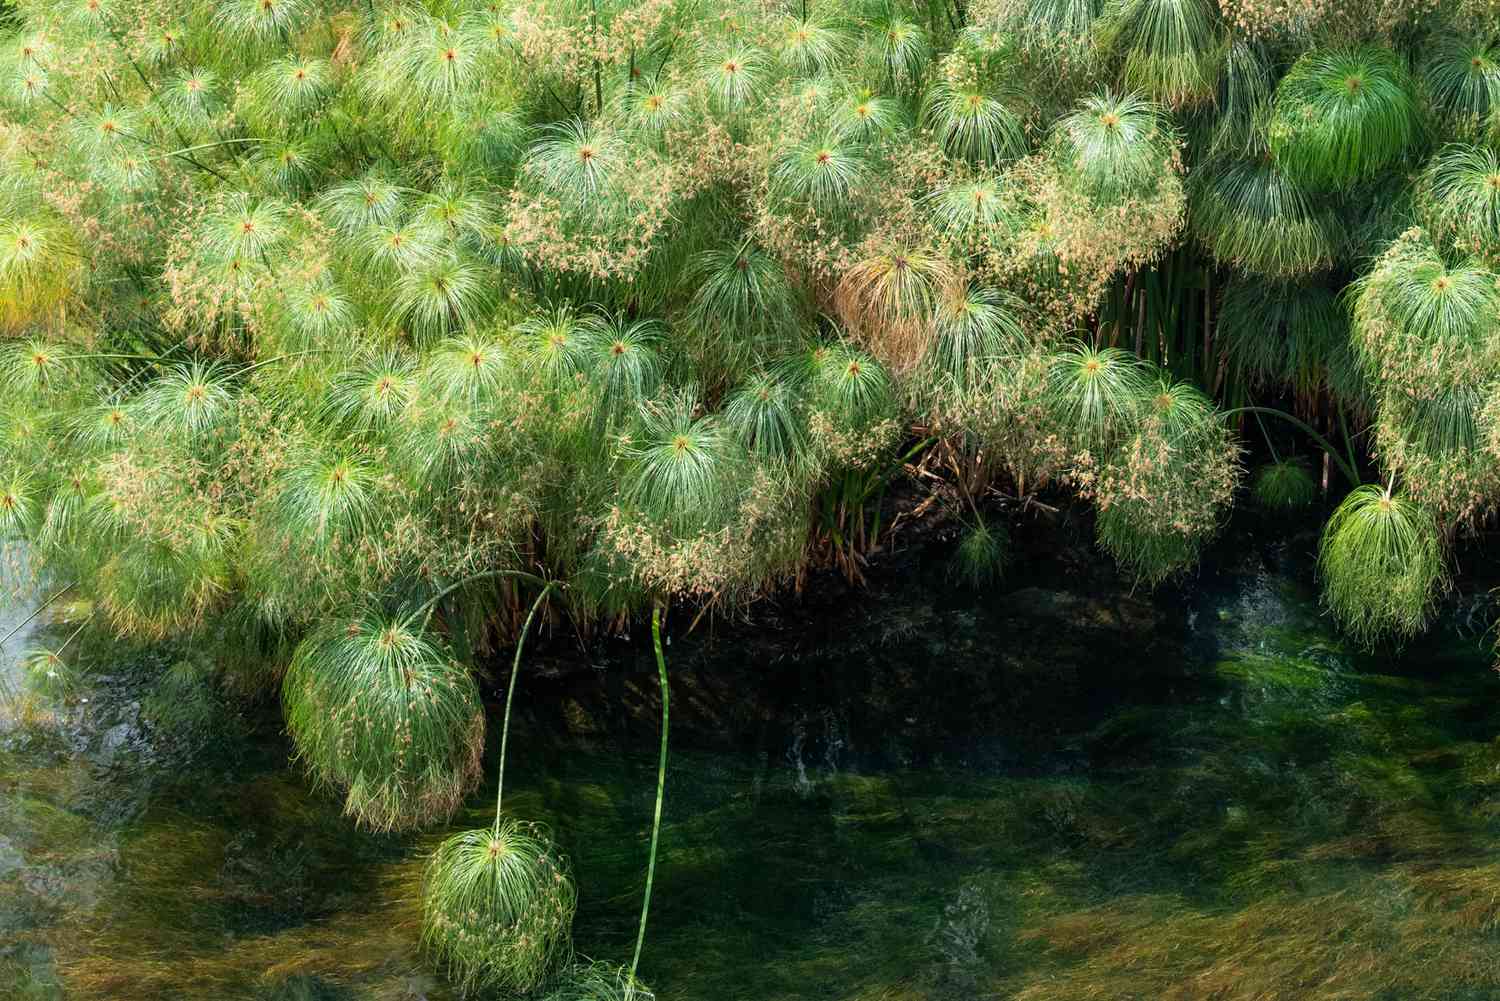 Papyrus-Pflanzen mit Büscheln schirmartiger grasartiger Strahlen, die über Wasser hängen